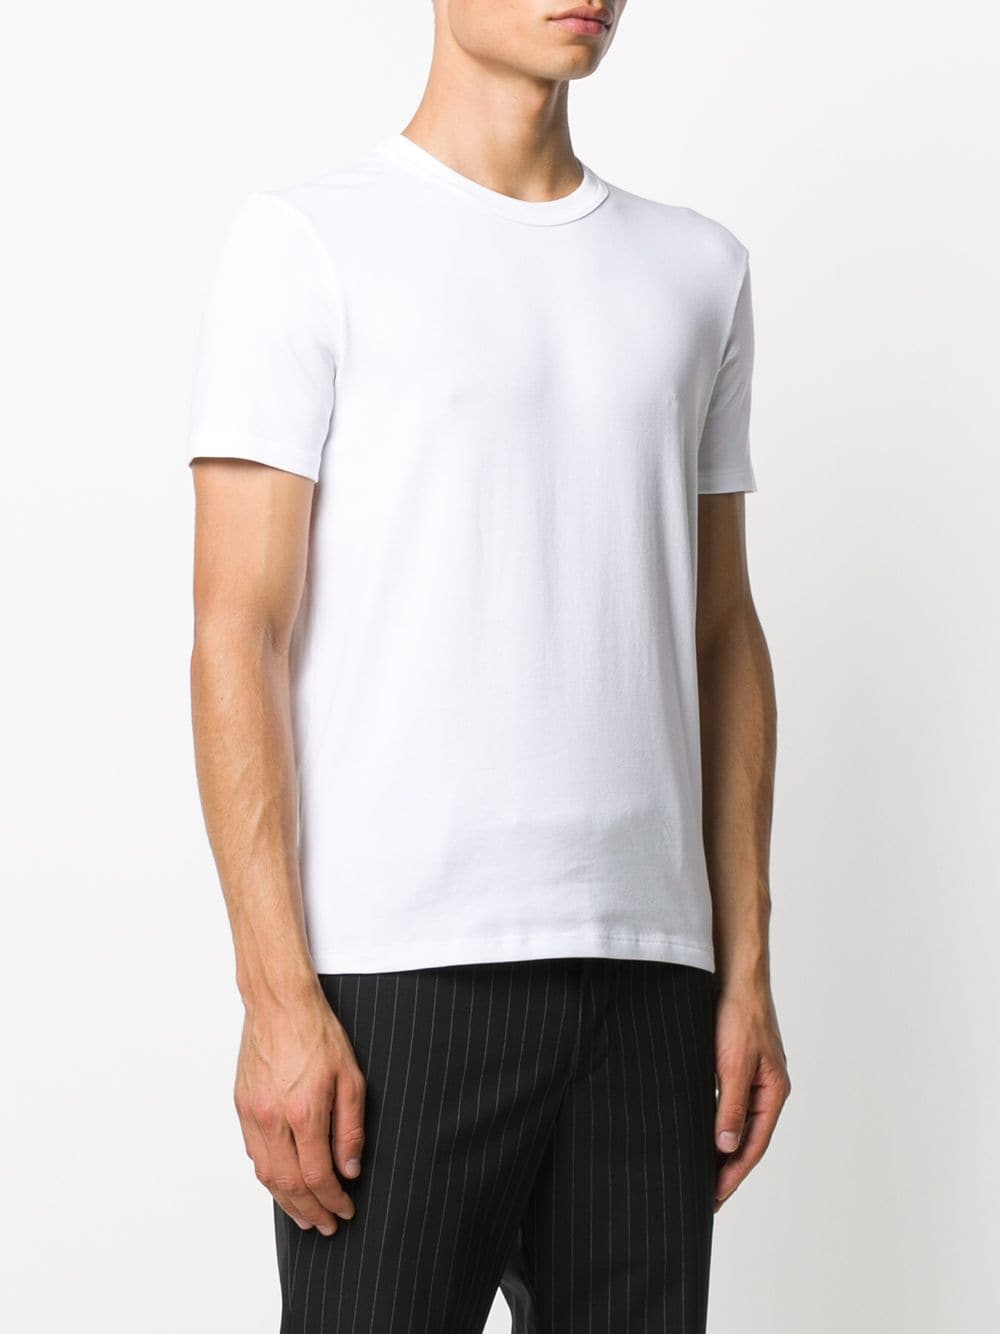 TOM FORD Cotton T-Shirt White - MAISONDEFASHION.COM